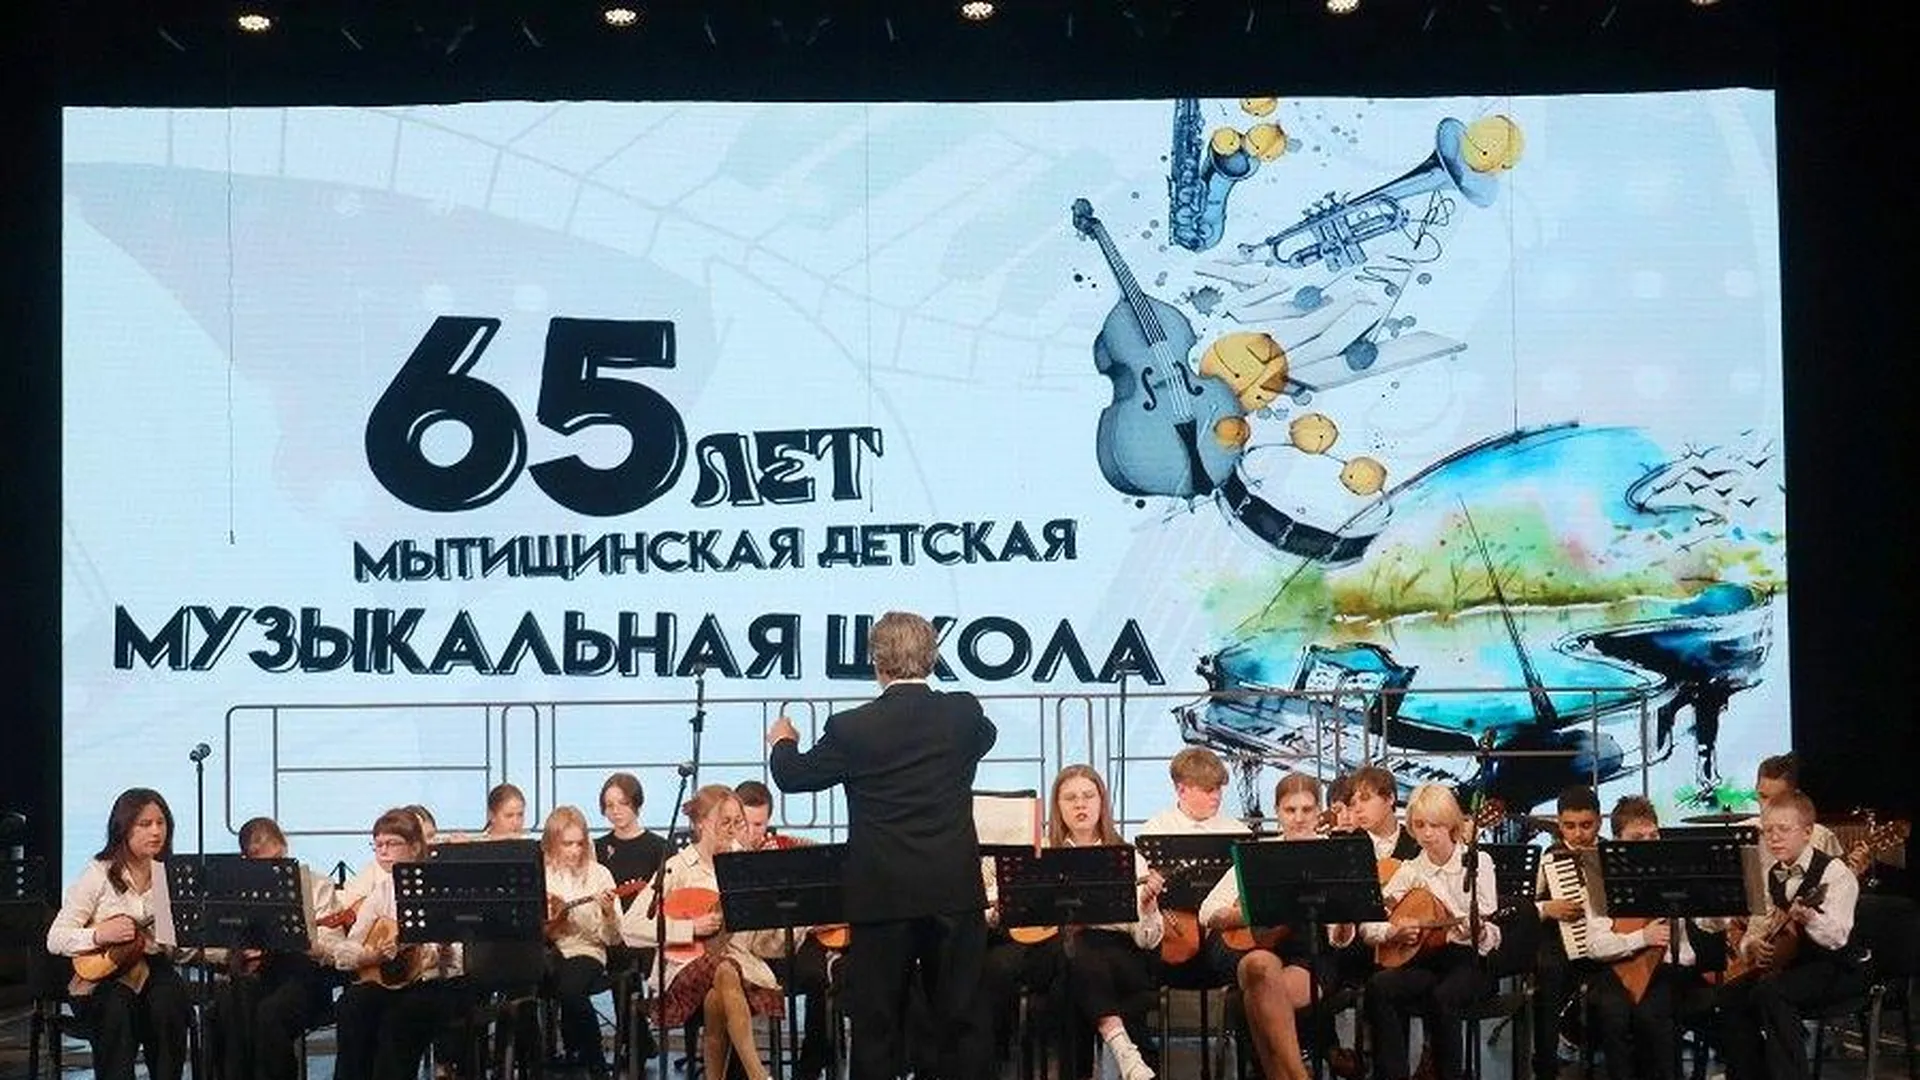 Во Дворце культуры «Яуза» прошел отчетный концерт мытищинской детской музыкальной школы